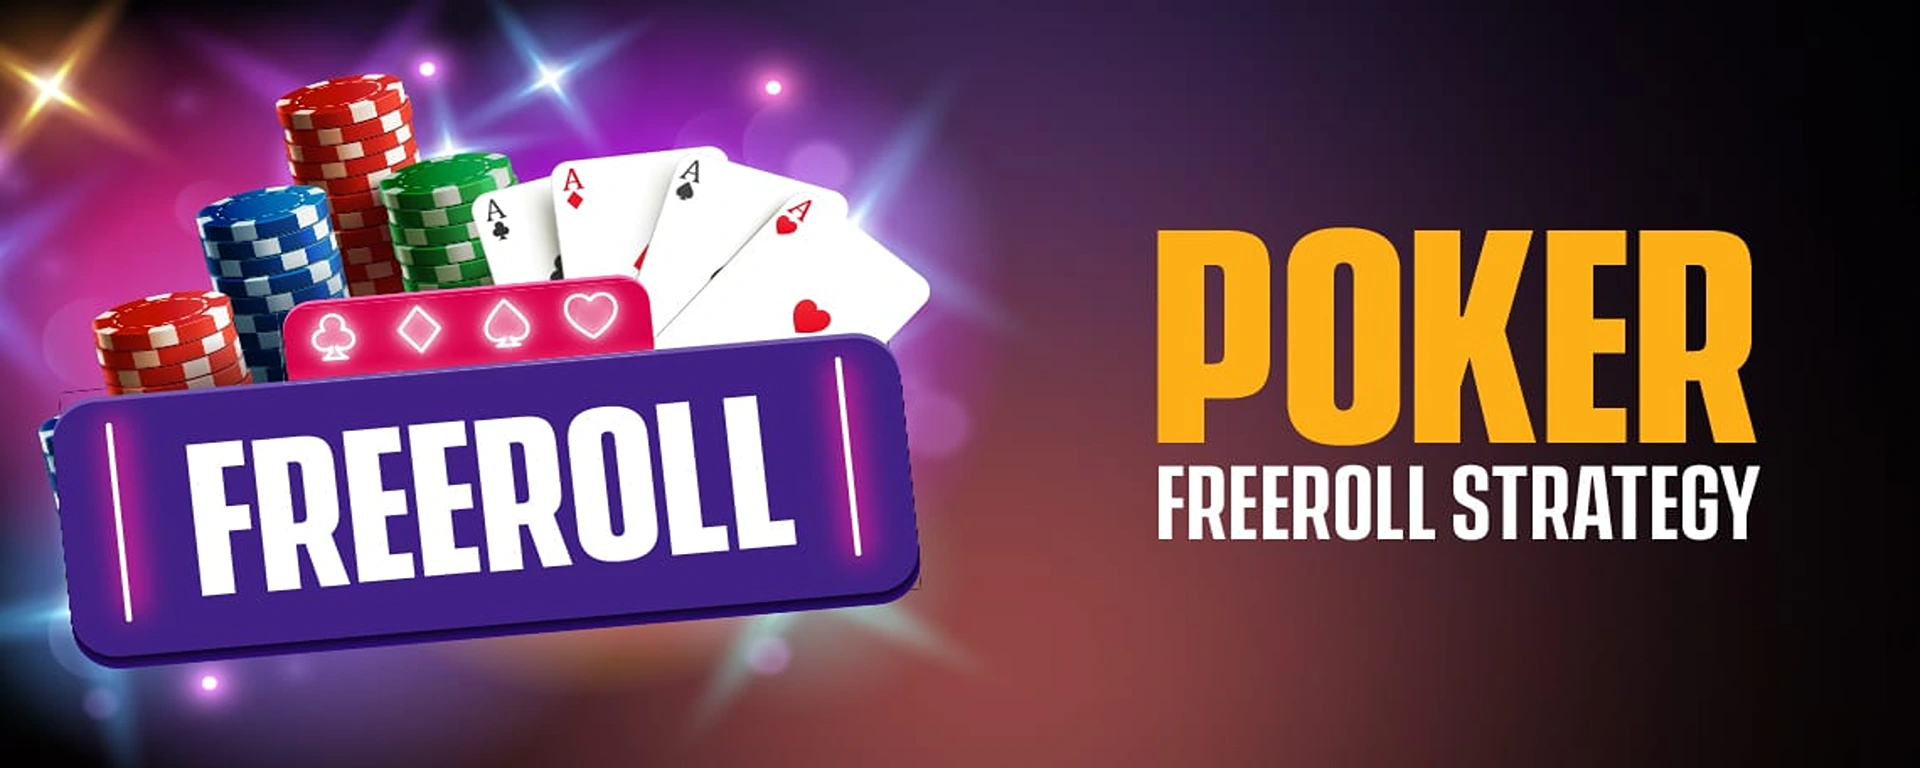 Freeroll Poker Strategy